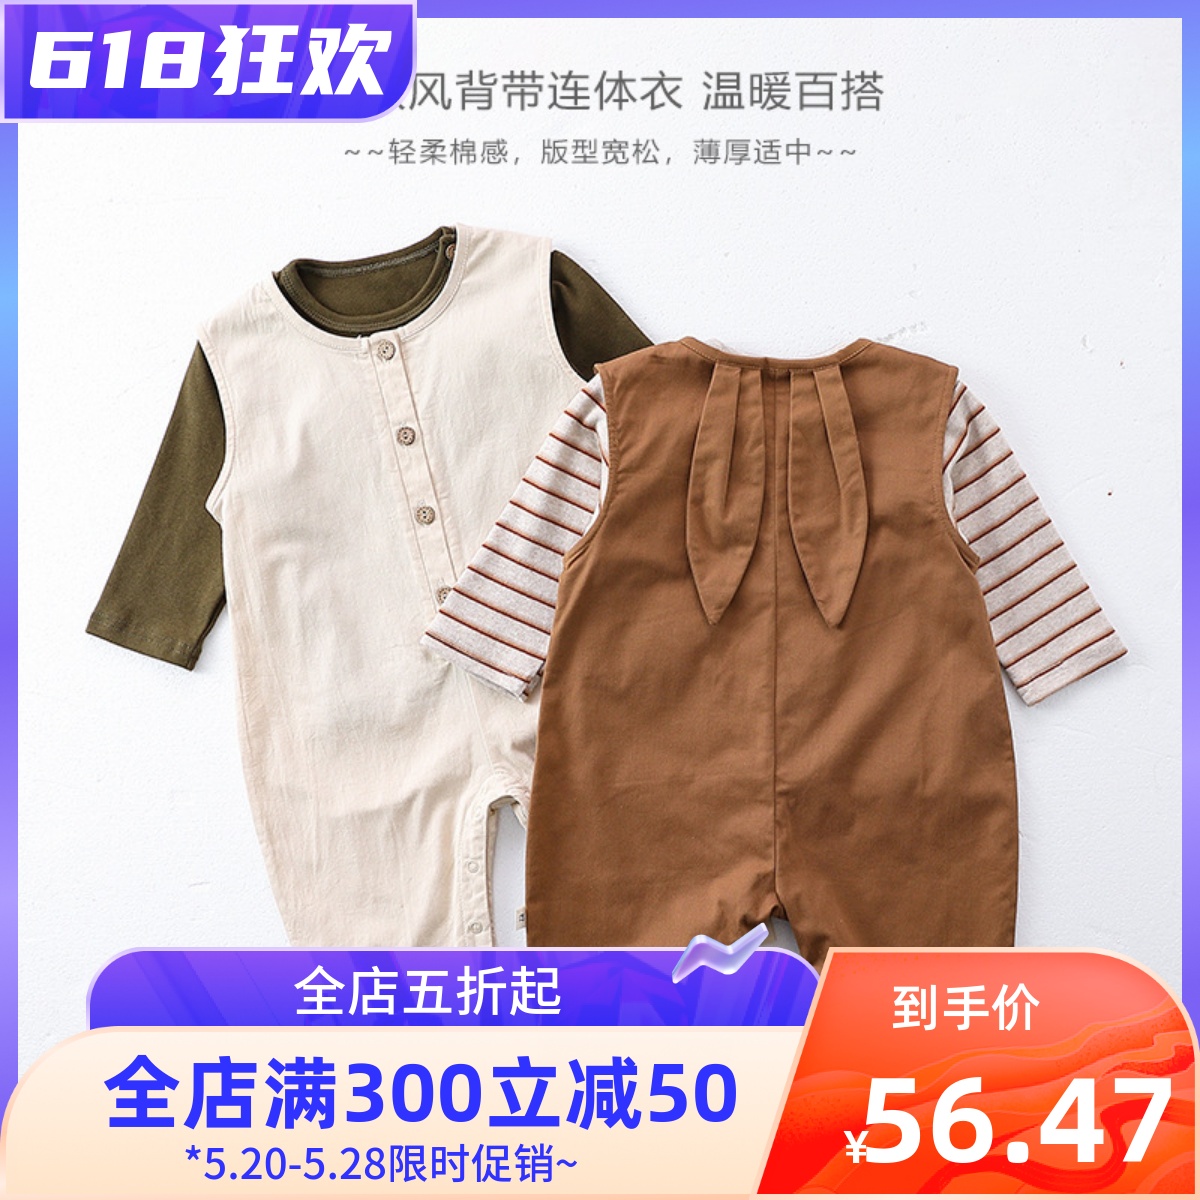 婴幼儿春季背心式背带裤纯色长袖条纹t恤两件套6个月-3岁宝宝套装